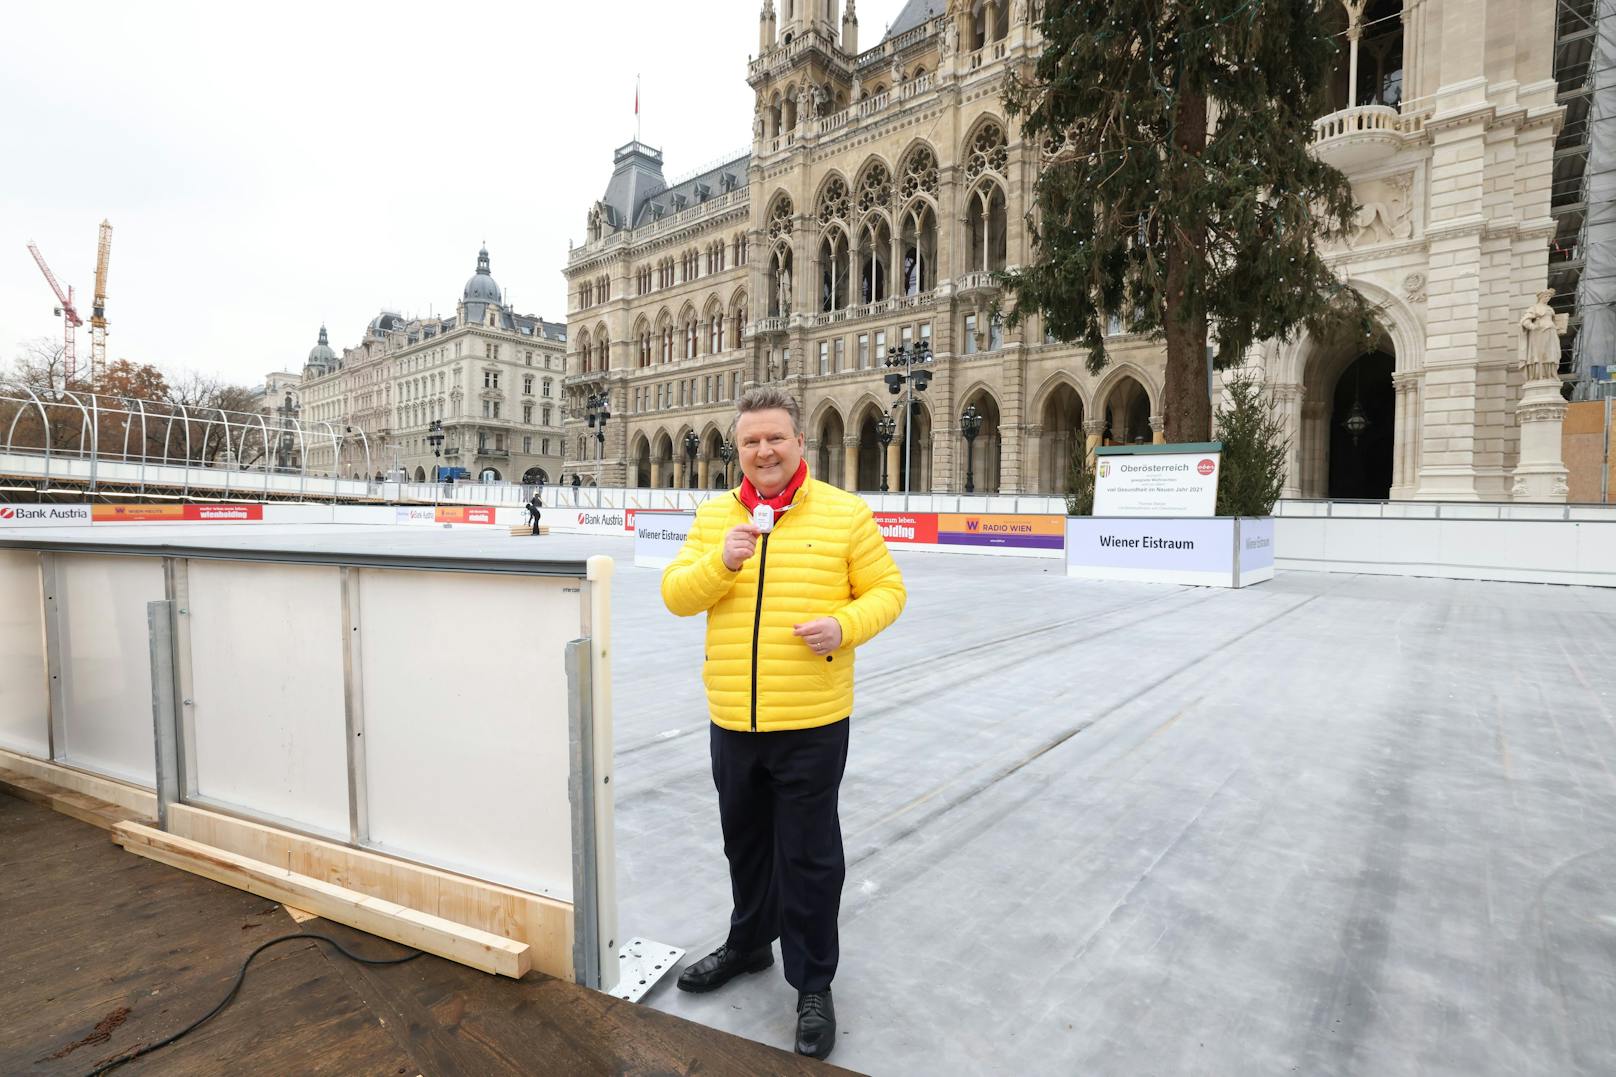 Um trotz Corona sicheres Eislaufen zu ermöglichen, setzt die Stadt heuer auf Distance Marker. Bürgermeister Michael Ludwig (SPÖ) stellte den kleinen elektronischen Helfer vor.